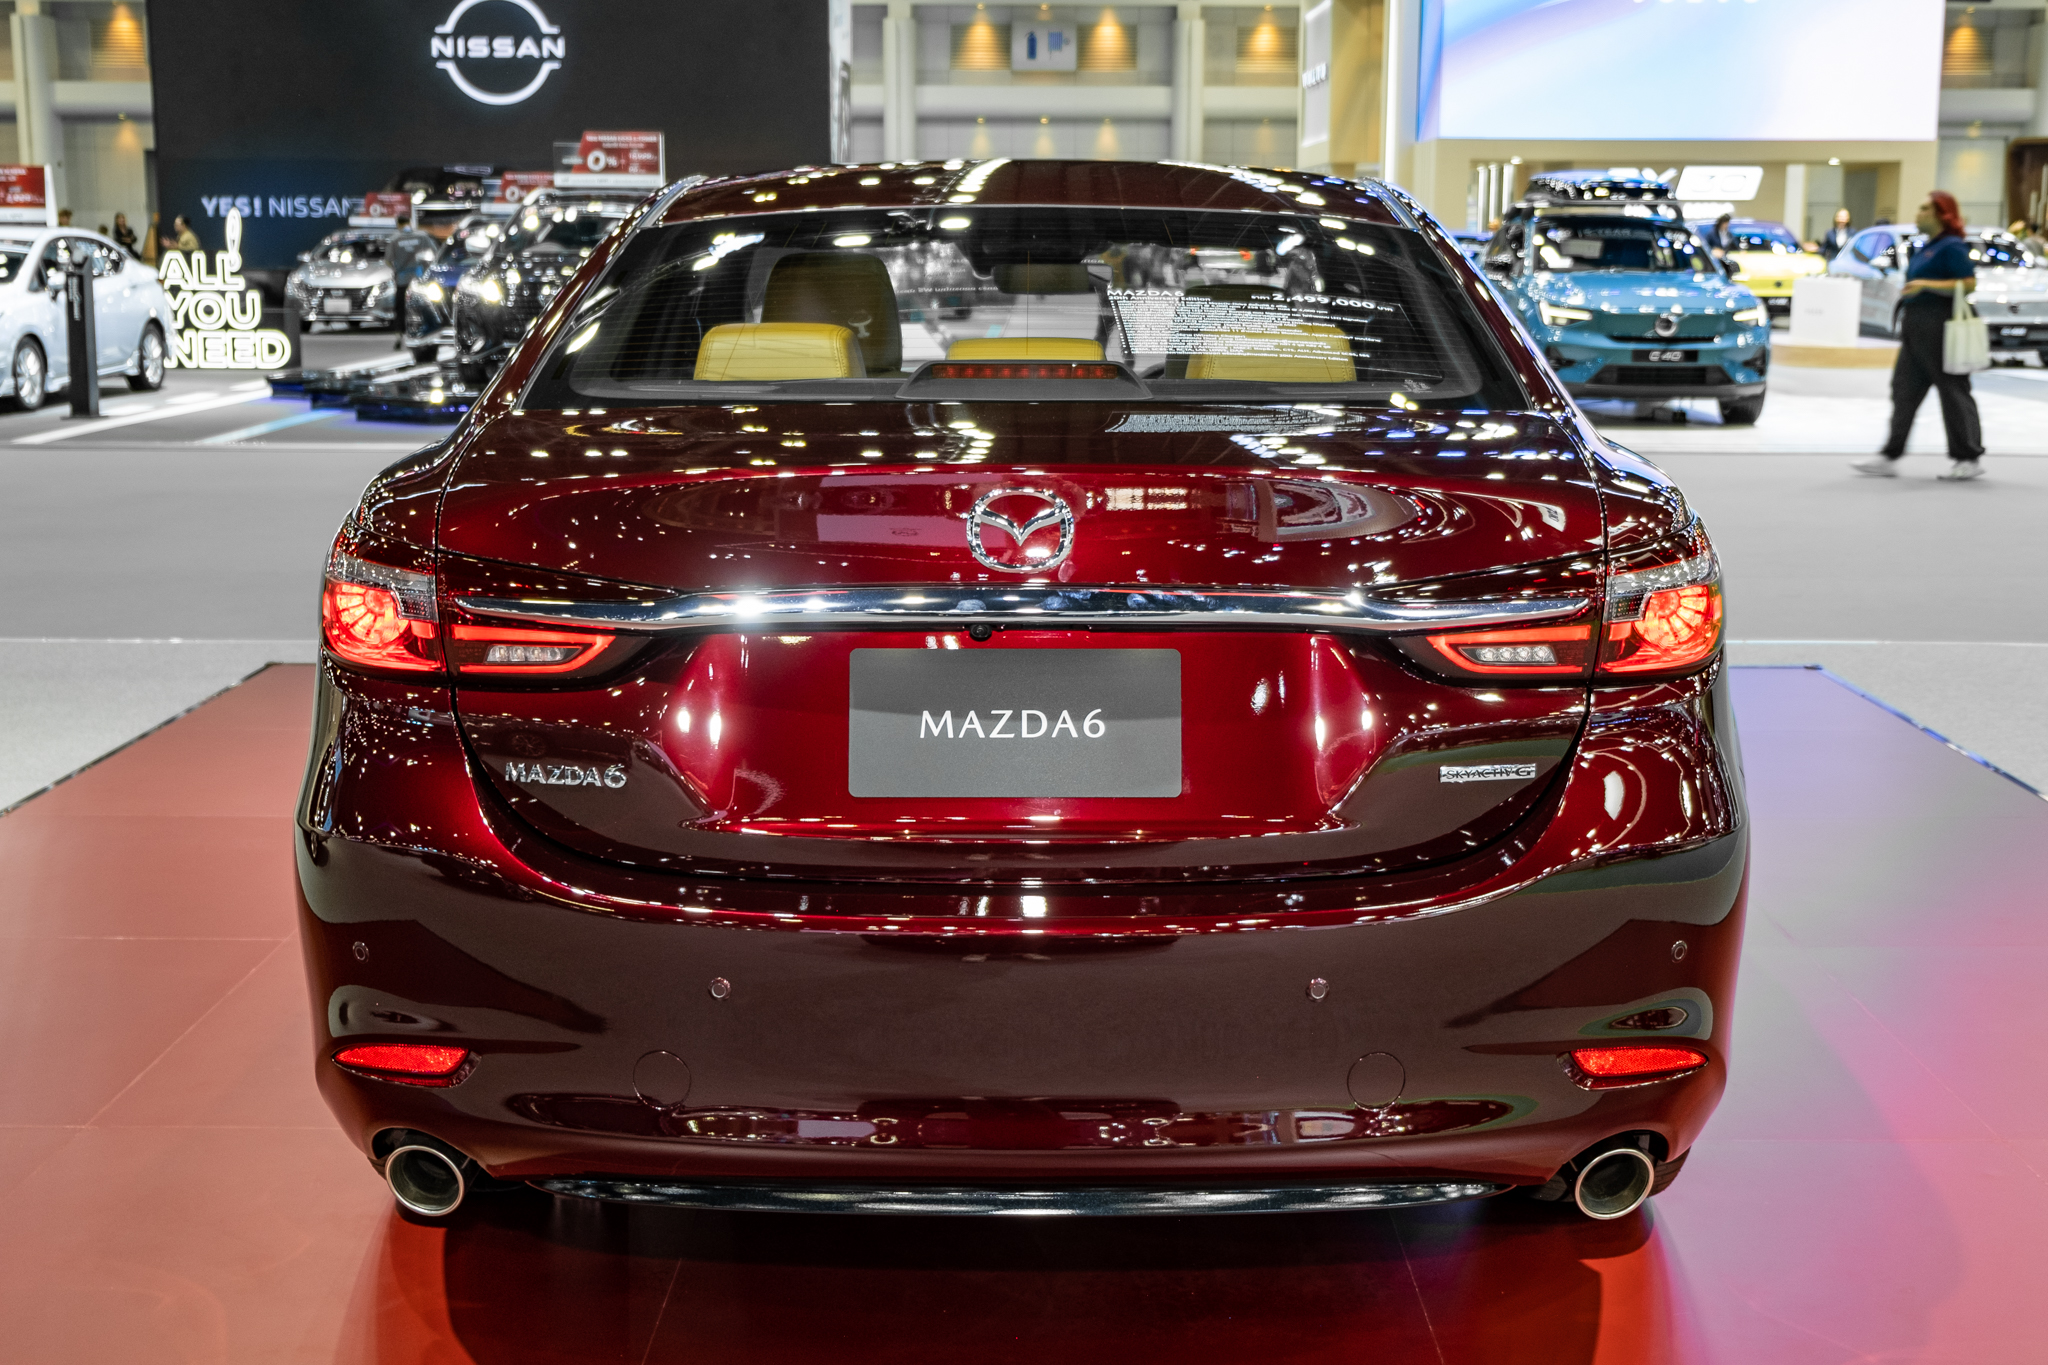 Chi tiết Mazda6 phiên bản kỷ niệm 20 năm: Đắt ngang Mercedes C-Class, nhiều chi tiết được thửa riêng - Ảnh 10.